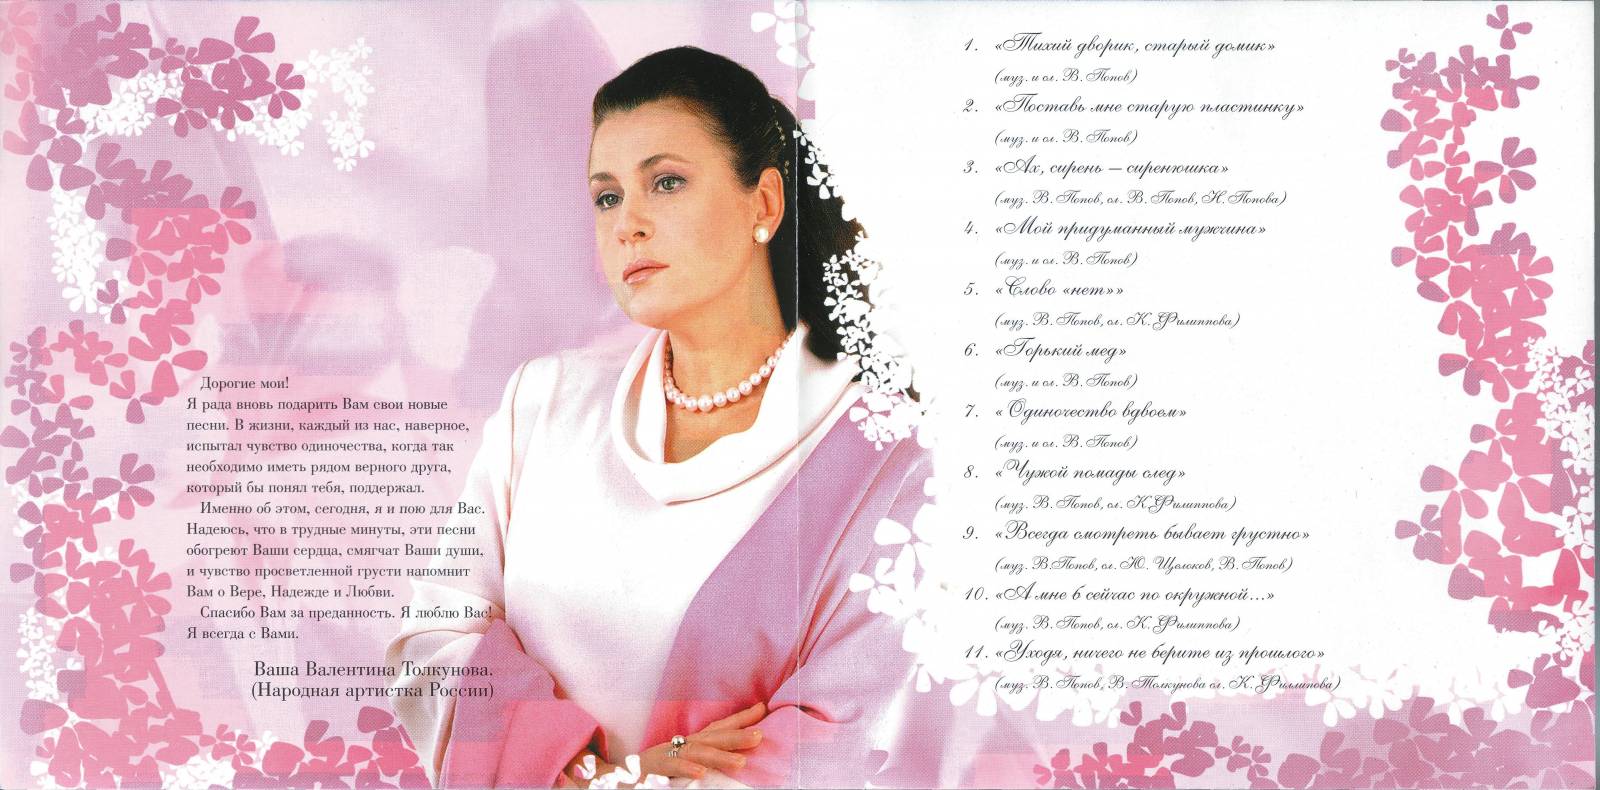 Валентина Толкунова 2002